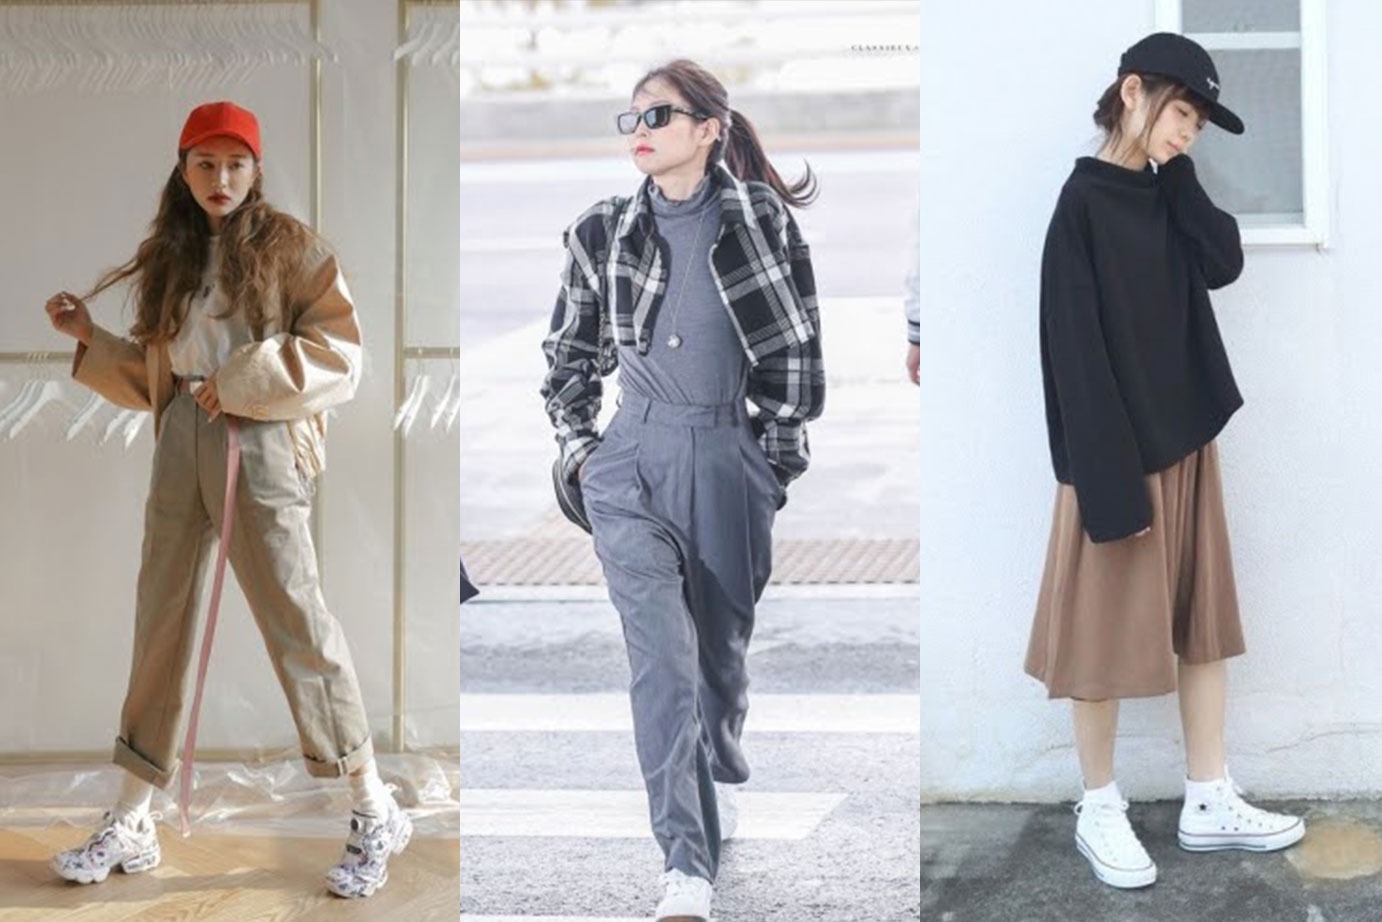 Siap Jadi Pusat Perhatian Saat di Kampus? Berikut Rekomendasi Outfit Ala Korean Style